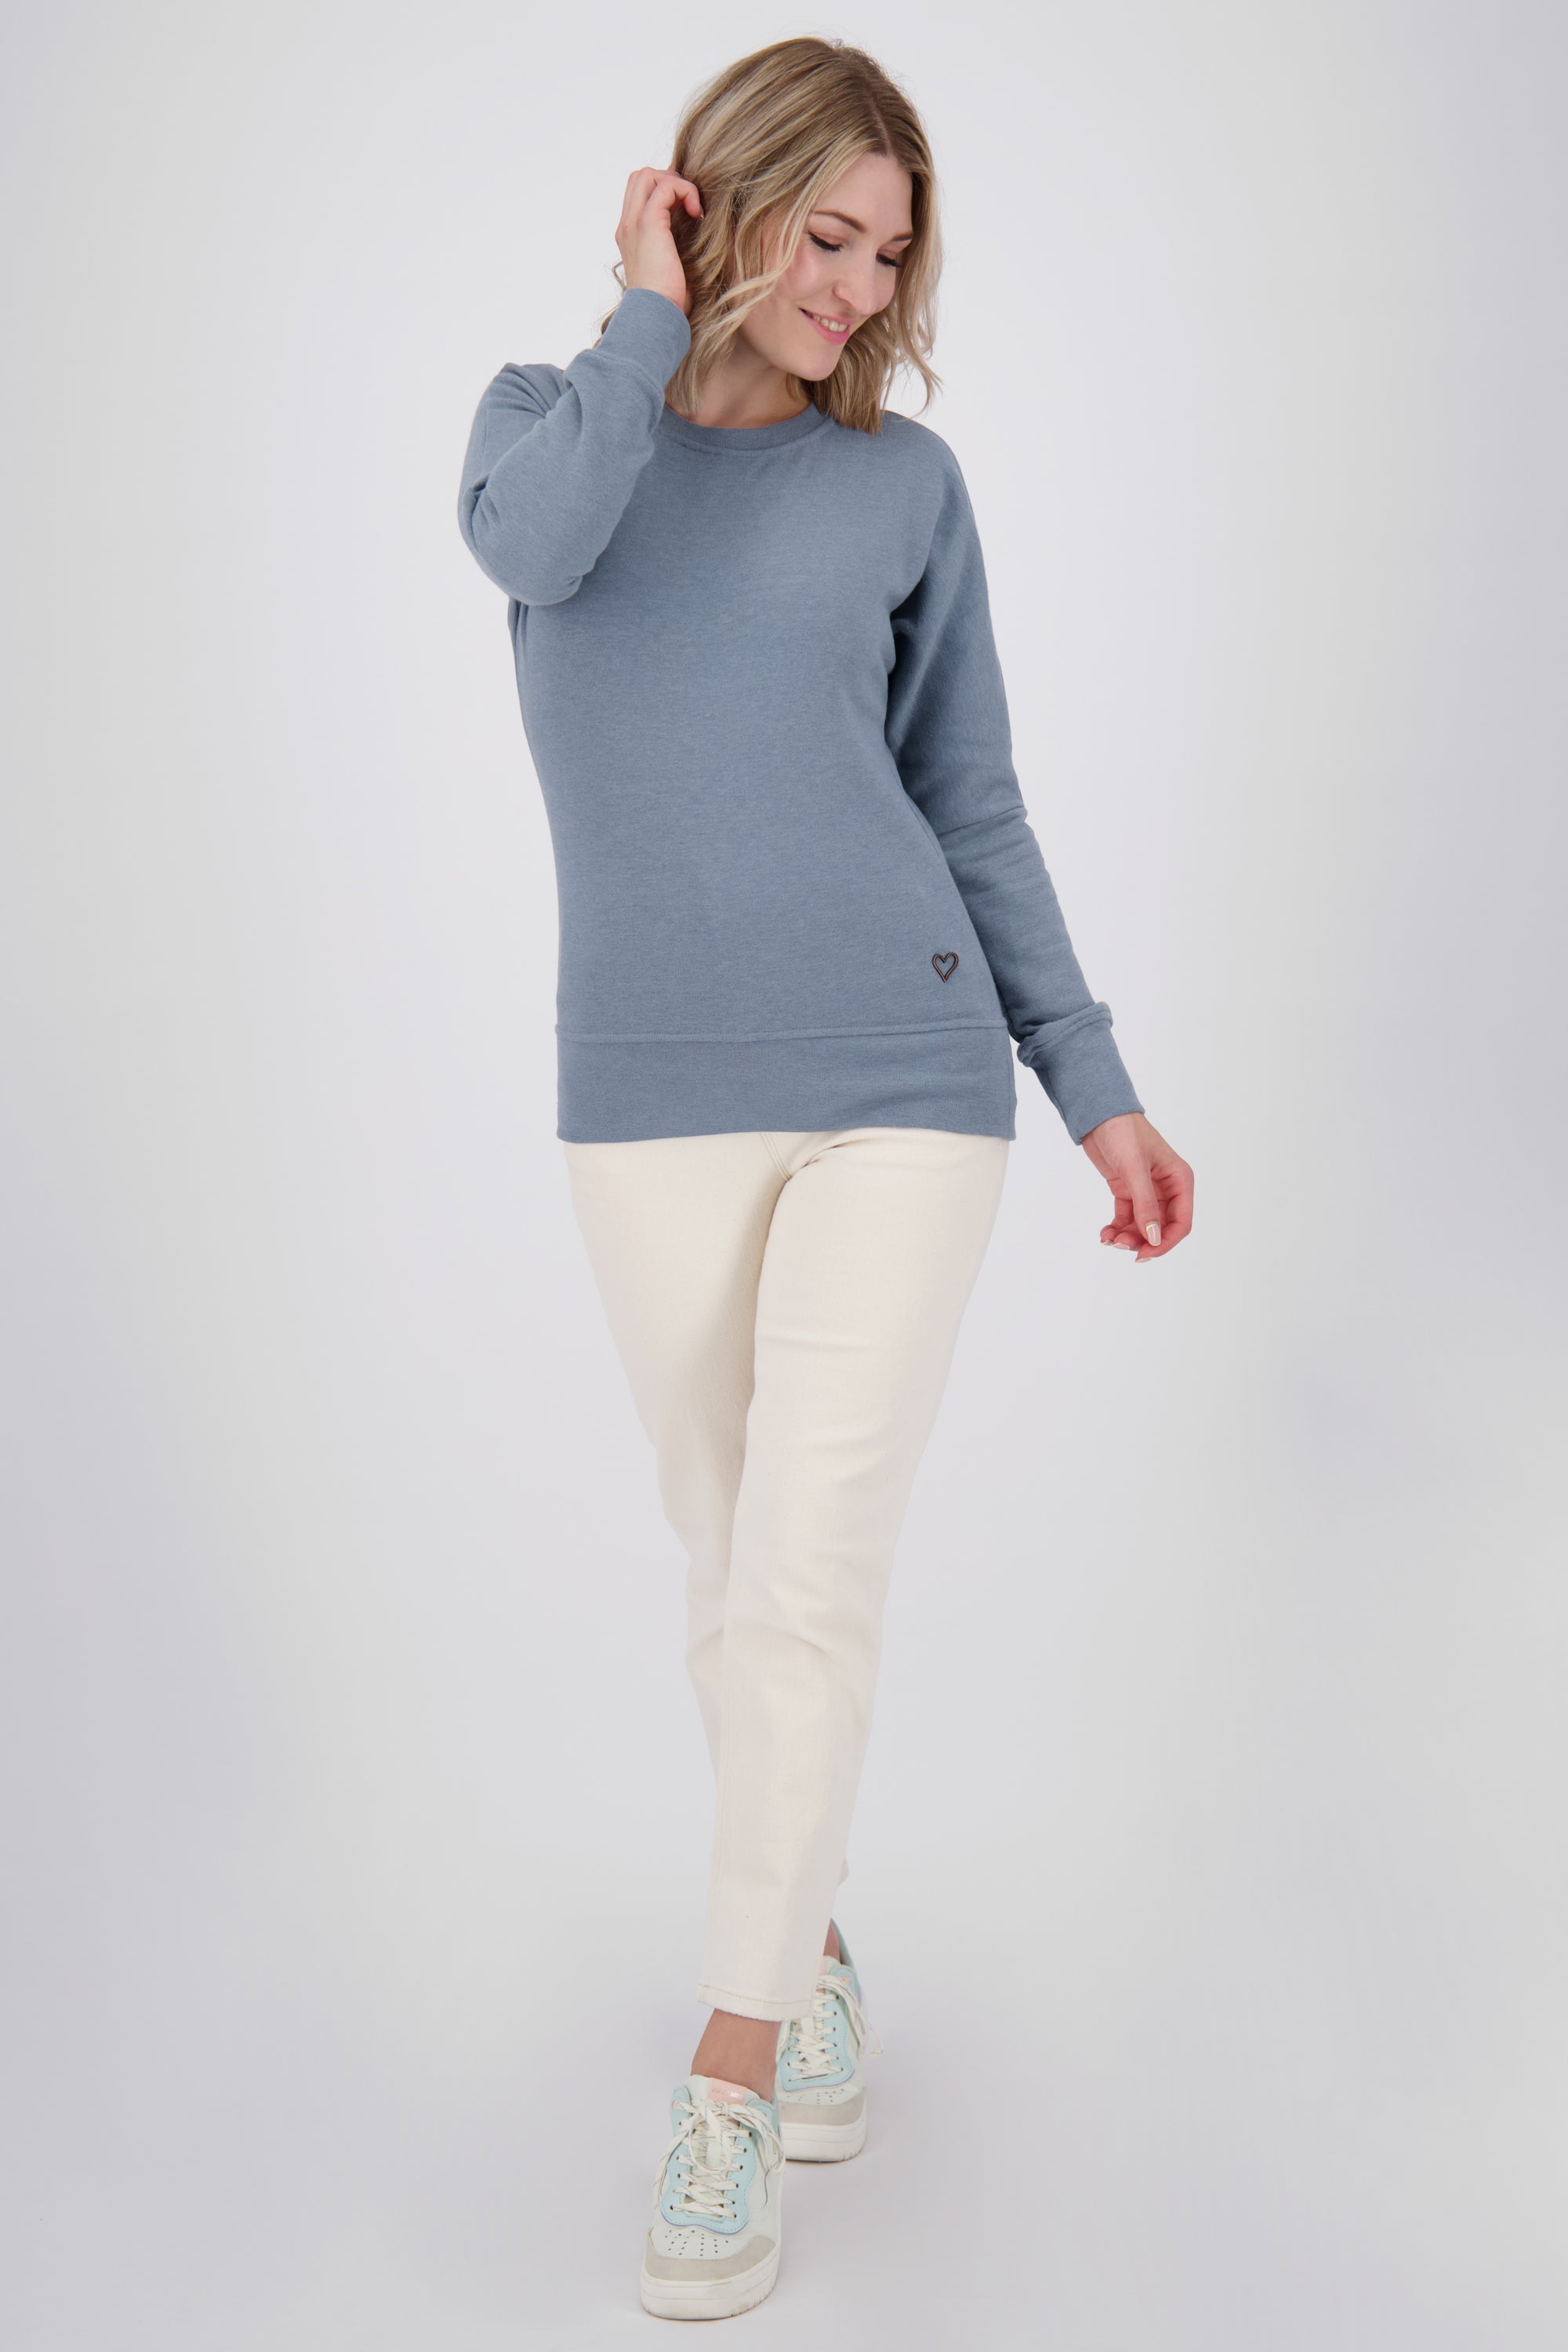 DarinAK A Sweater für Damen - Trendiger und farbenfroher Sweatpullover Blau